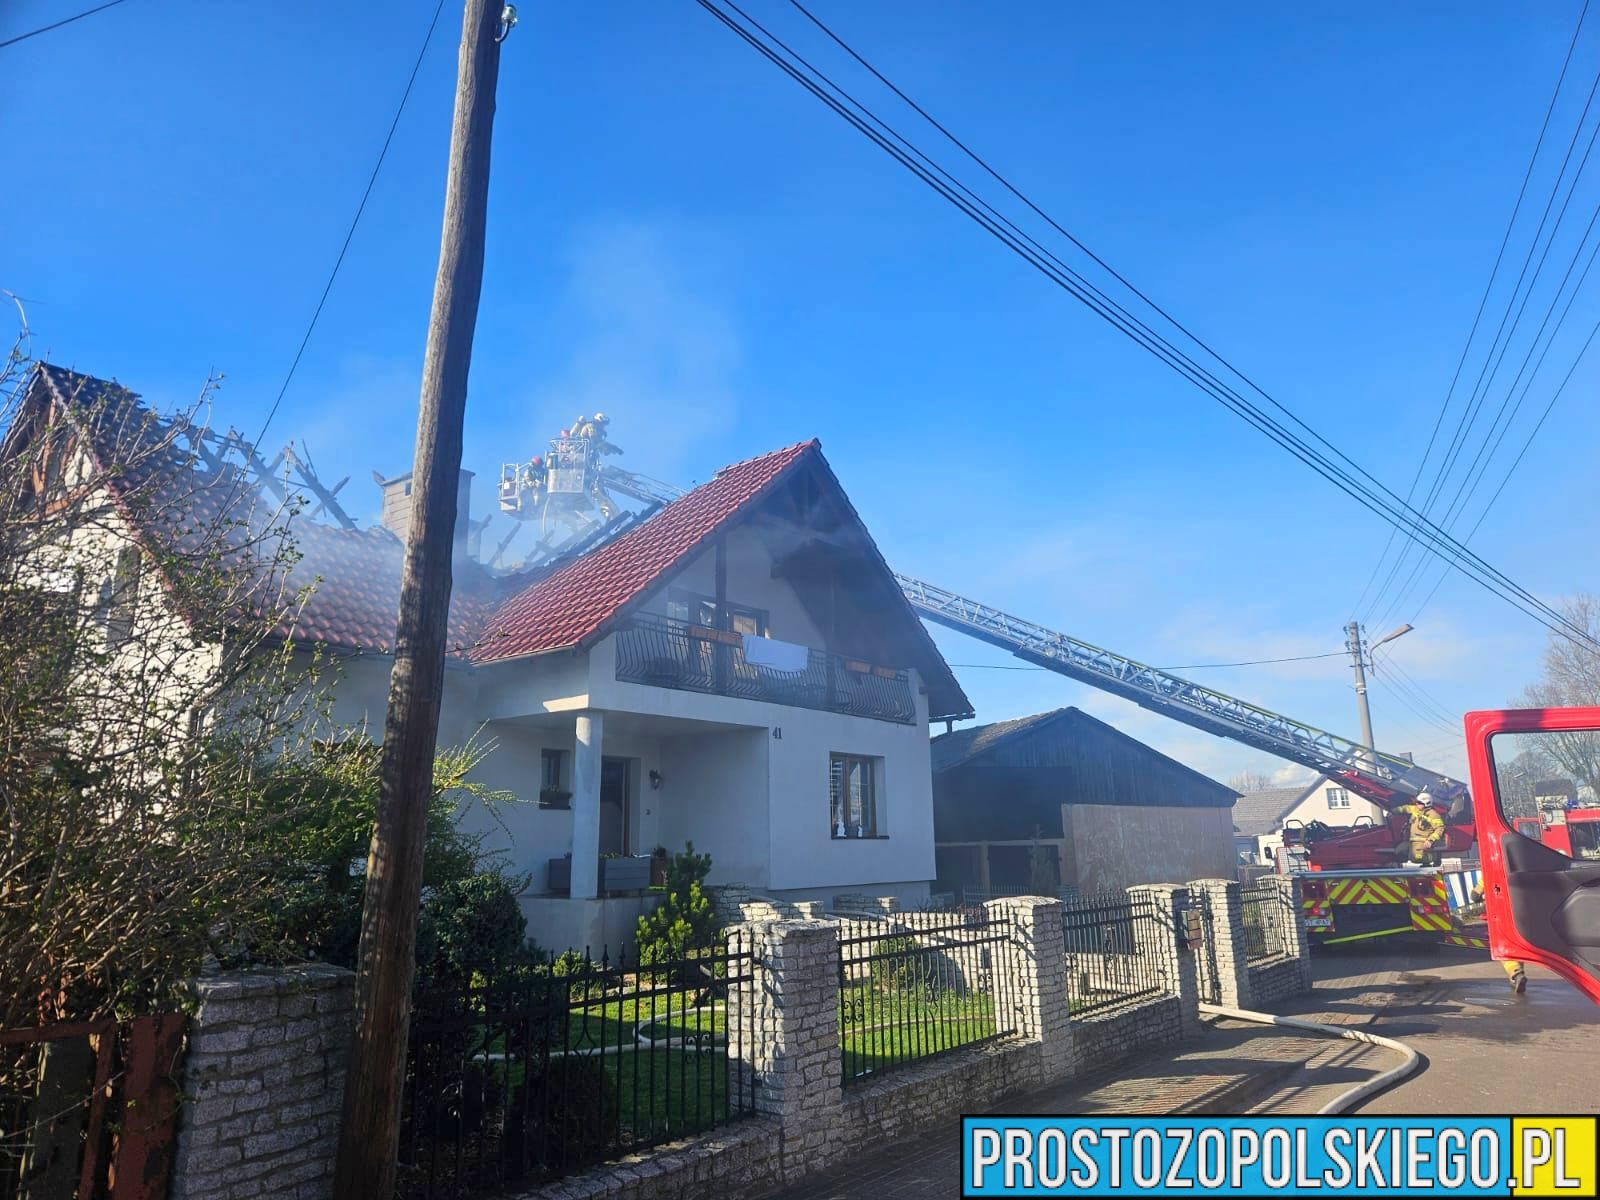 Pożar poddasza i wyposażenia środka w domu jednorodzinnym w miejscowości Osiek w powiecie strzeleckim.